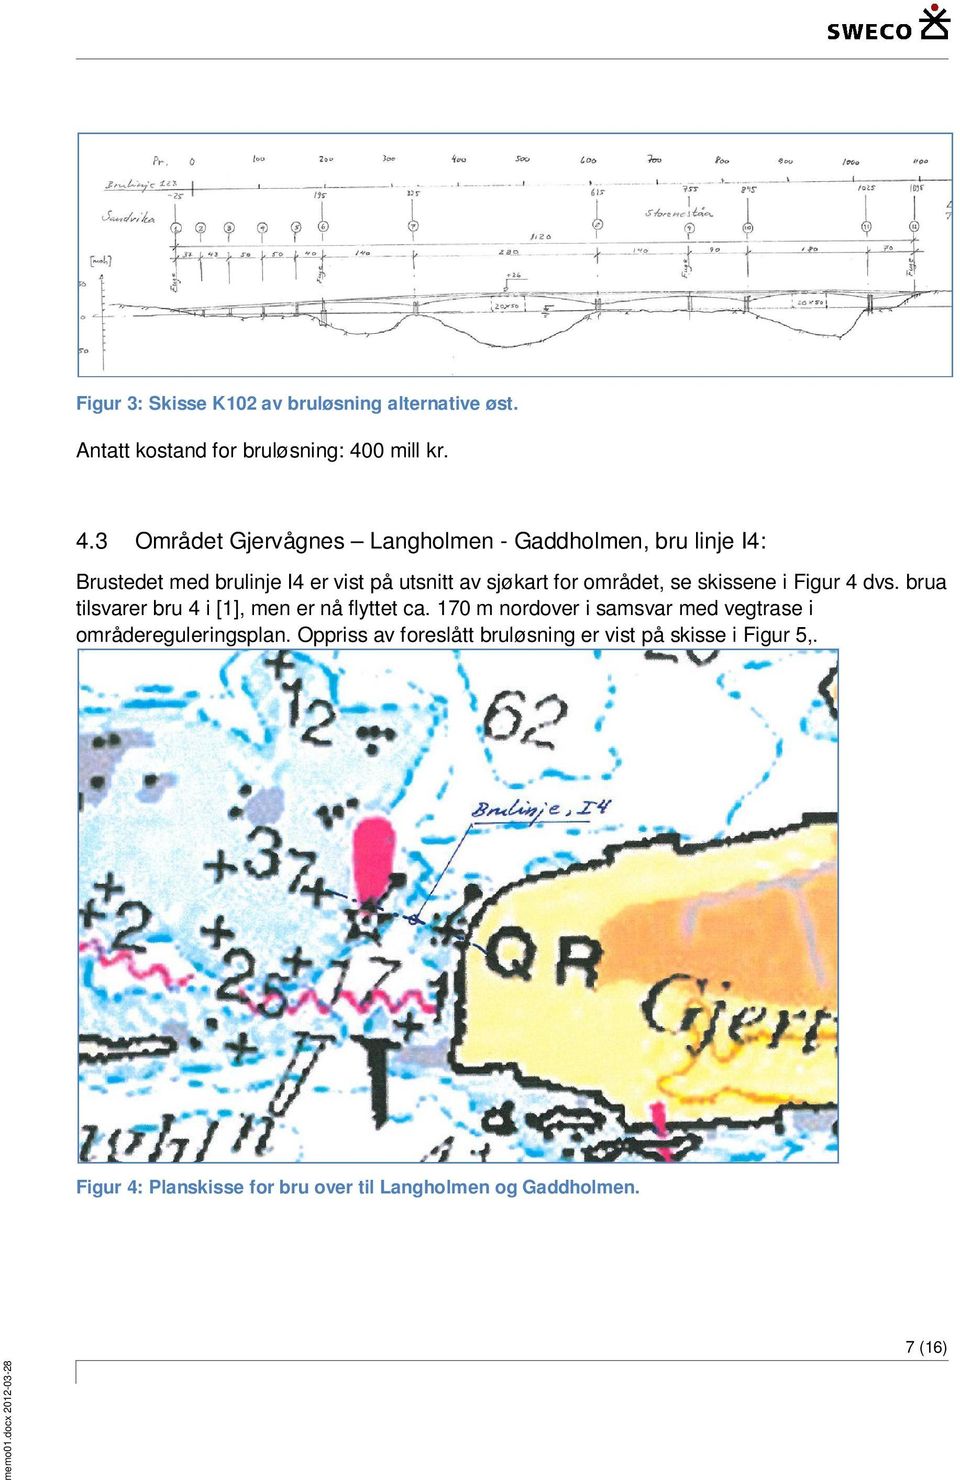 3 Området Gjervågnes Langholmen - Gaddholmen, bru linje I4: Brustedet med brulinje I4 er vist på utsnitt av sjøkart for